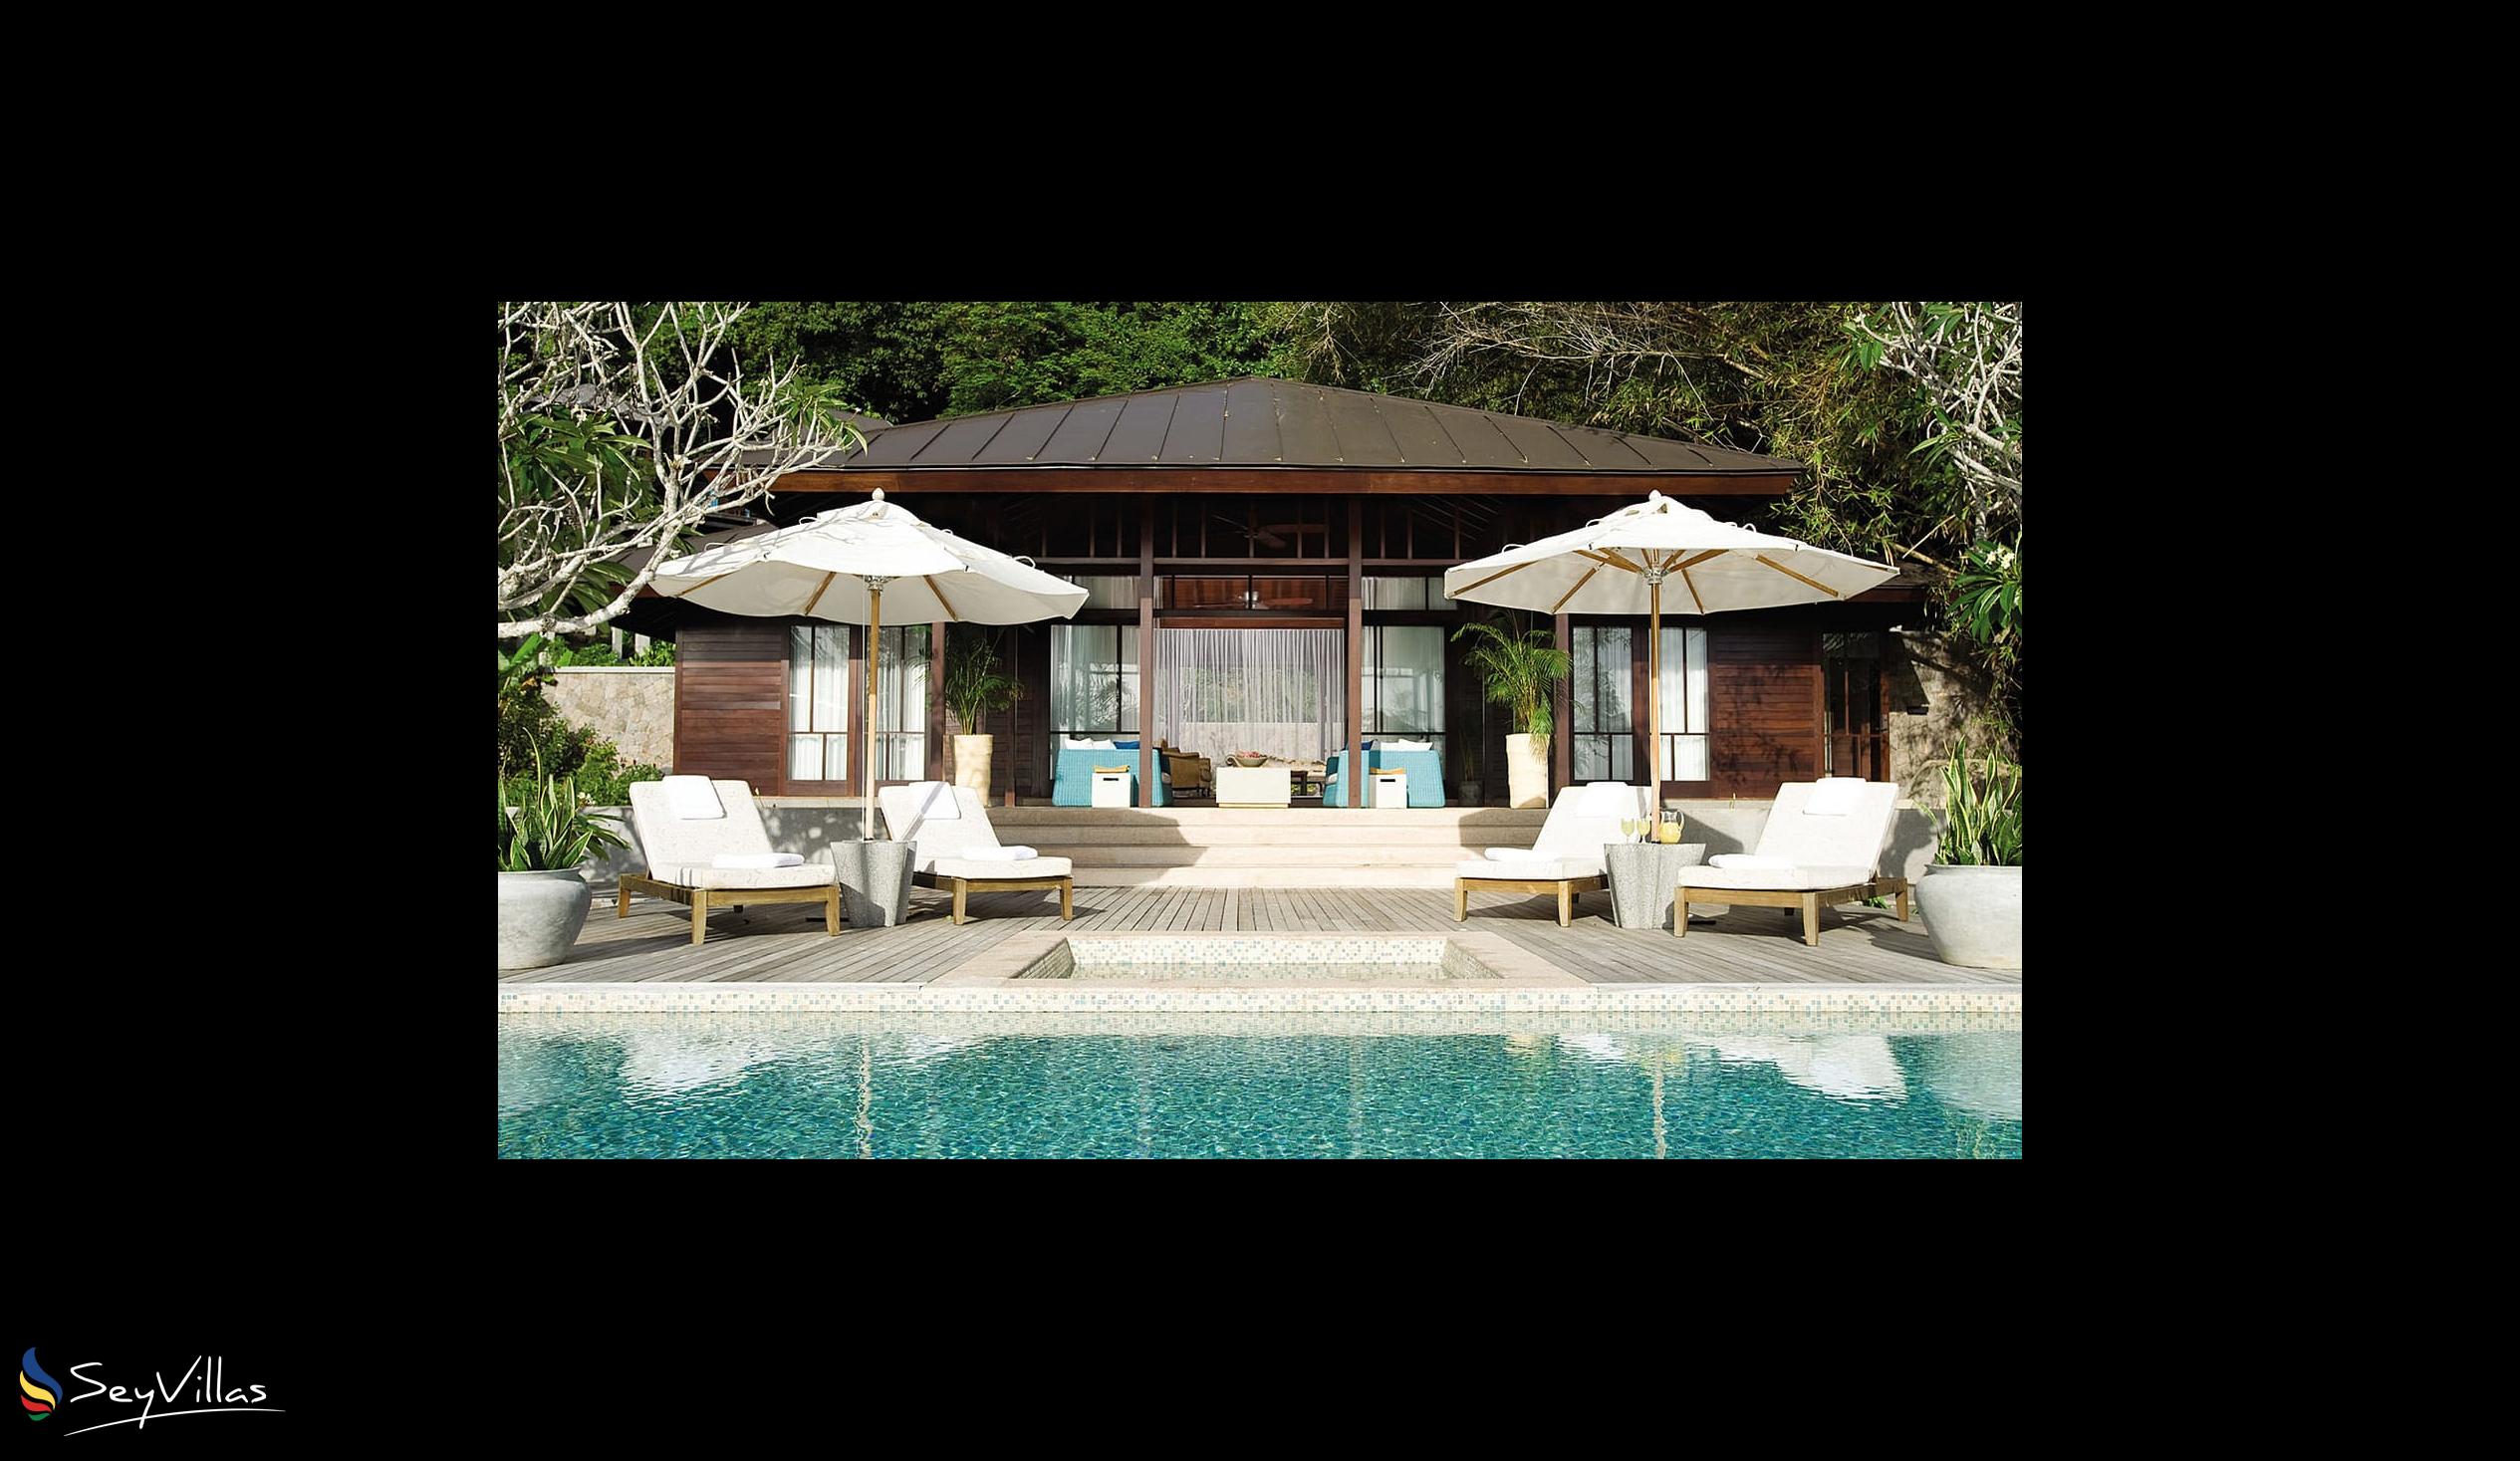 Foto 61: Four Seasons Resort - 3-Bedroom Presidential Suite - Mahé (Seychelles)